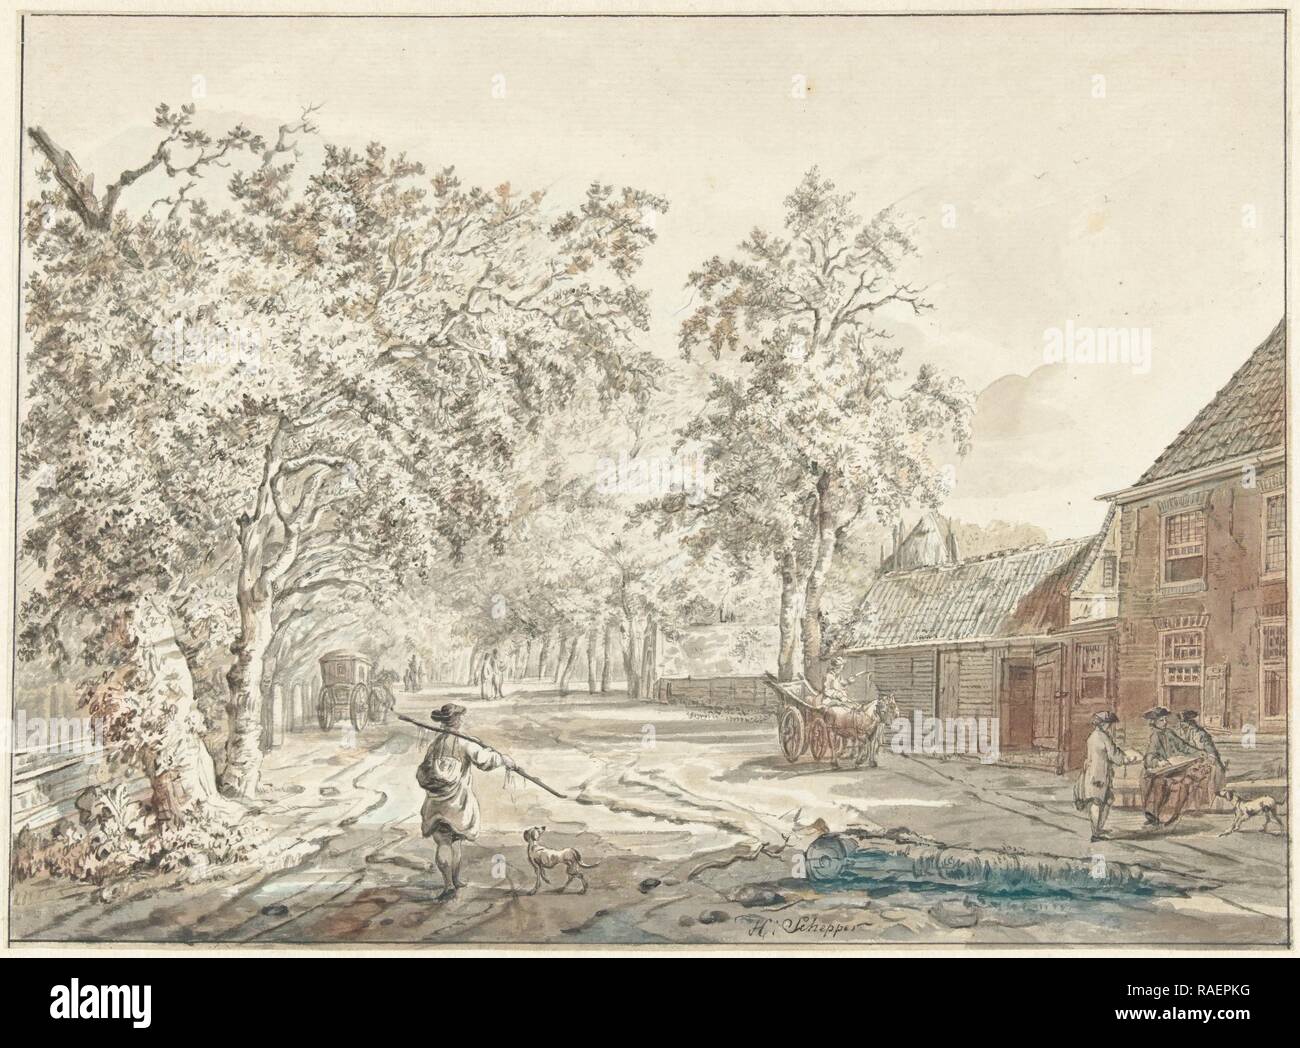 Villaggio, Hendrik Schepper, 1700 - 180. Reinventato da Gibon. Arte Classica con un tocco di moderno reinventato Foto Stock